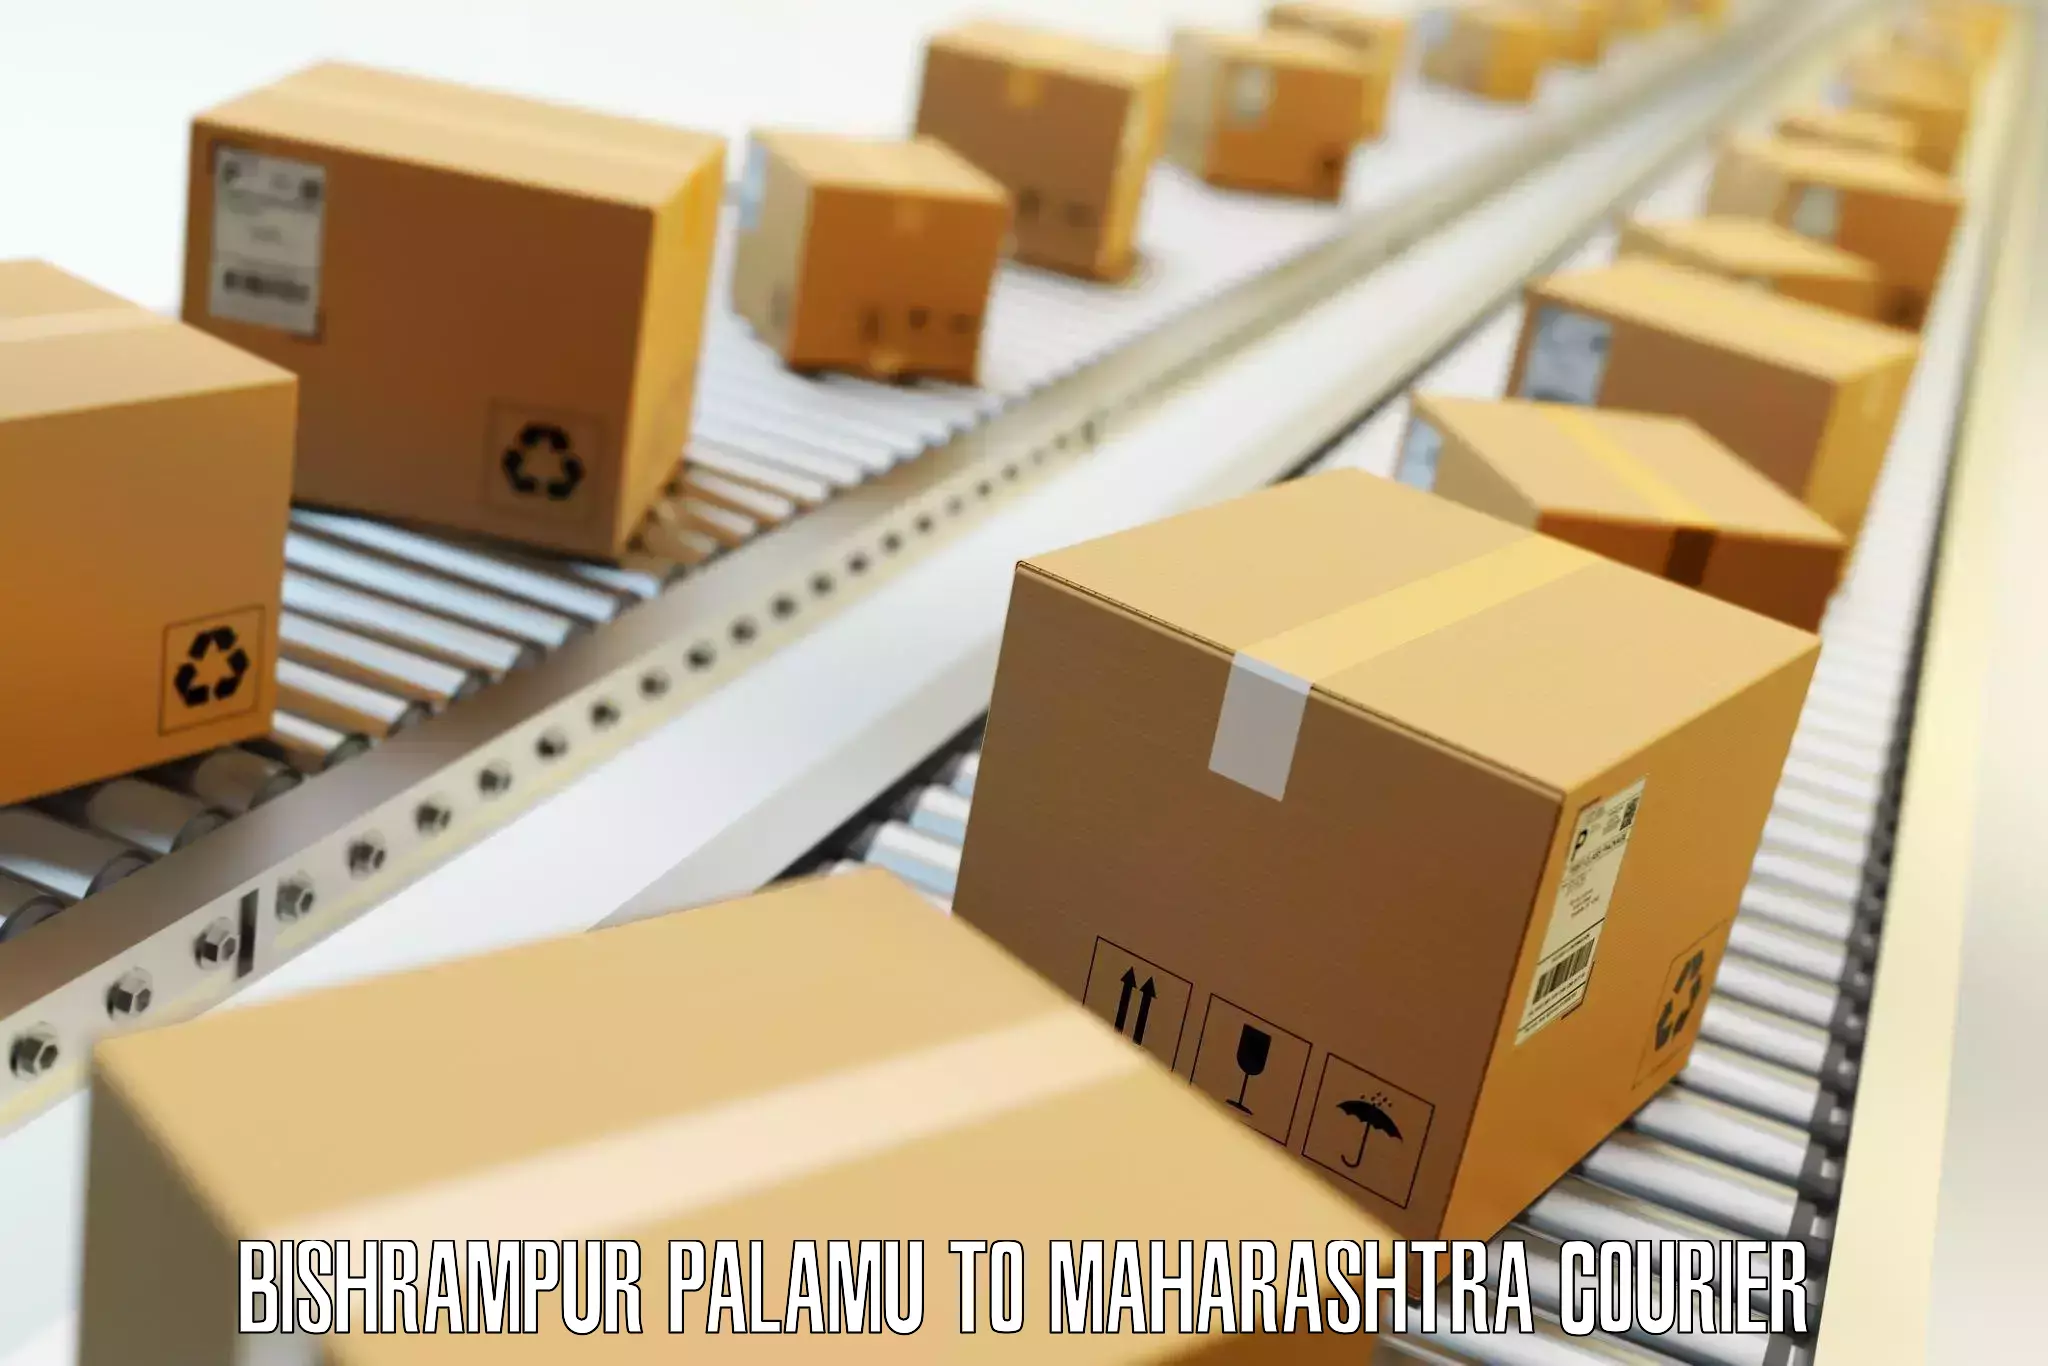 Efficient baggage courier system Bishrampur Palamu to Tasgaon